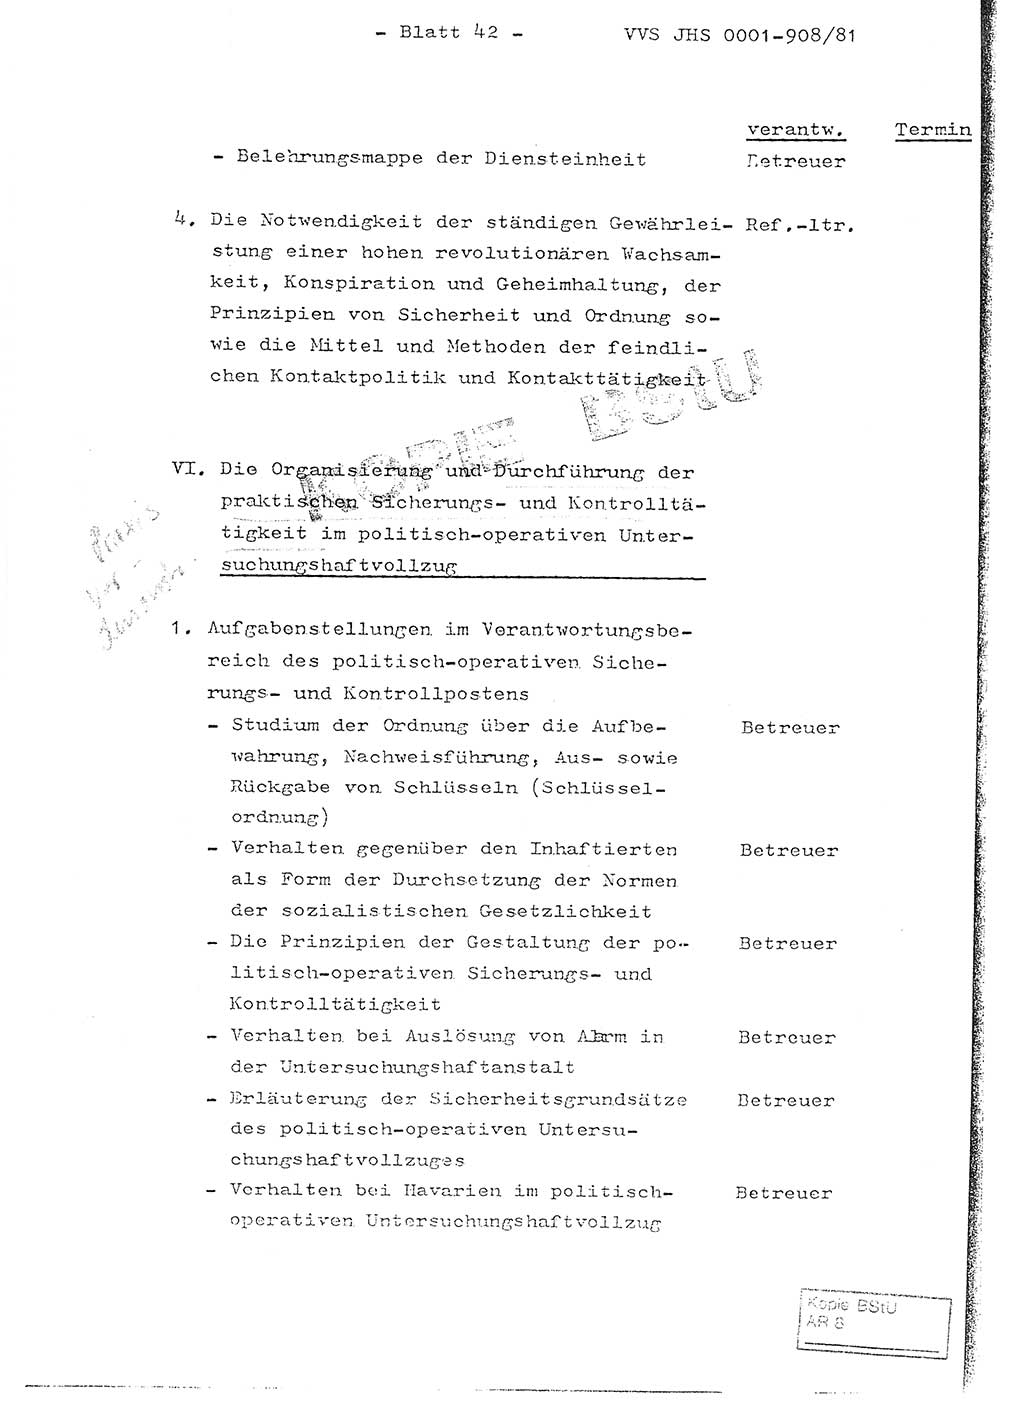 Fachschulabschlußarbeit Oberleutnant Wolfgang Wittmann (Abt. ⅩⅣ), Ministerium für Staatssicherheit (MfS) [Deutsche Demokratische Republik (DDR)], Juristische Hochschule (JHS), Vertrauliche Verschlußsache (VVS) o001-908/82, Potsdam 1982, Blatt 42 (FS-Abschl.-Arb. MfS DDR JHS VVS o001-908/82 1982, Bl. 42)